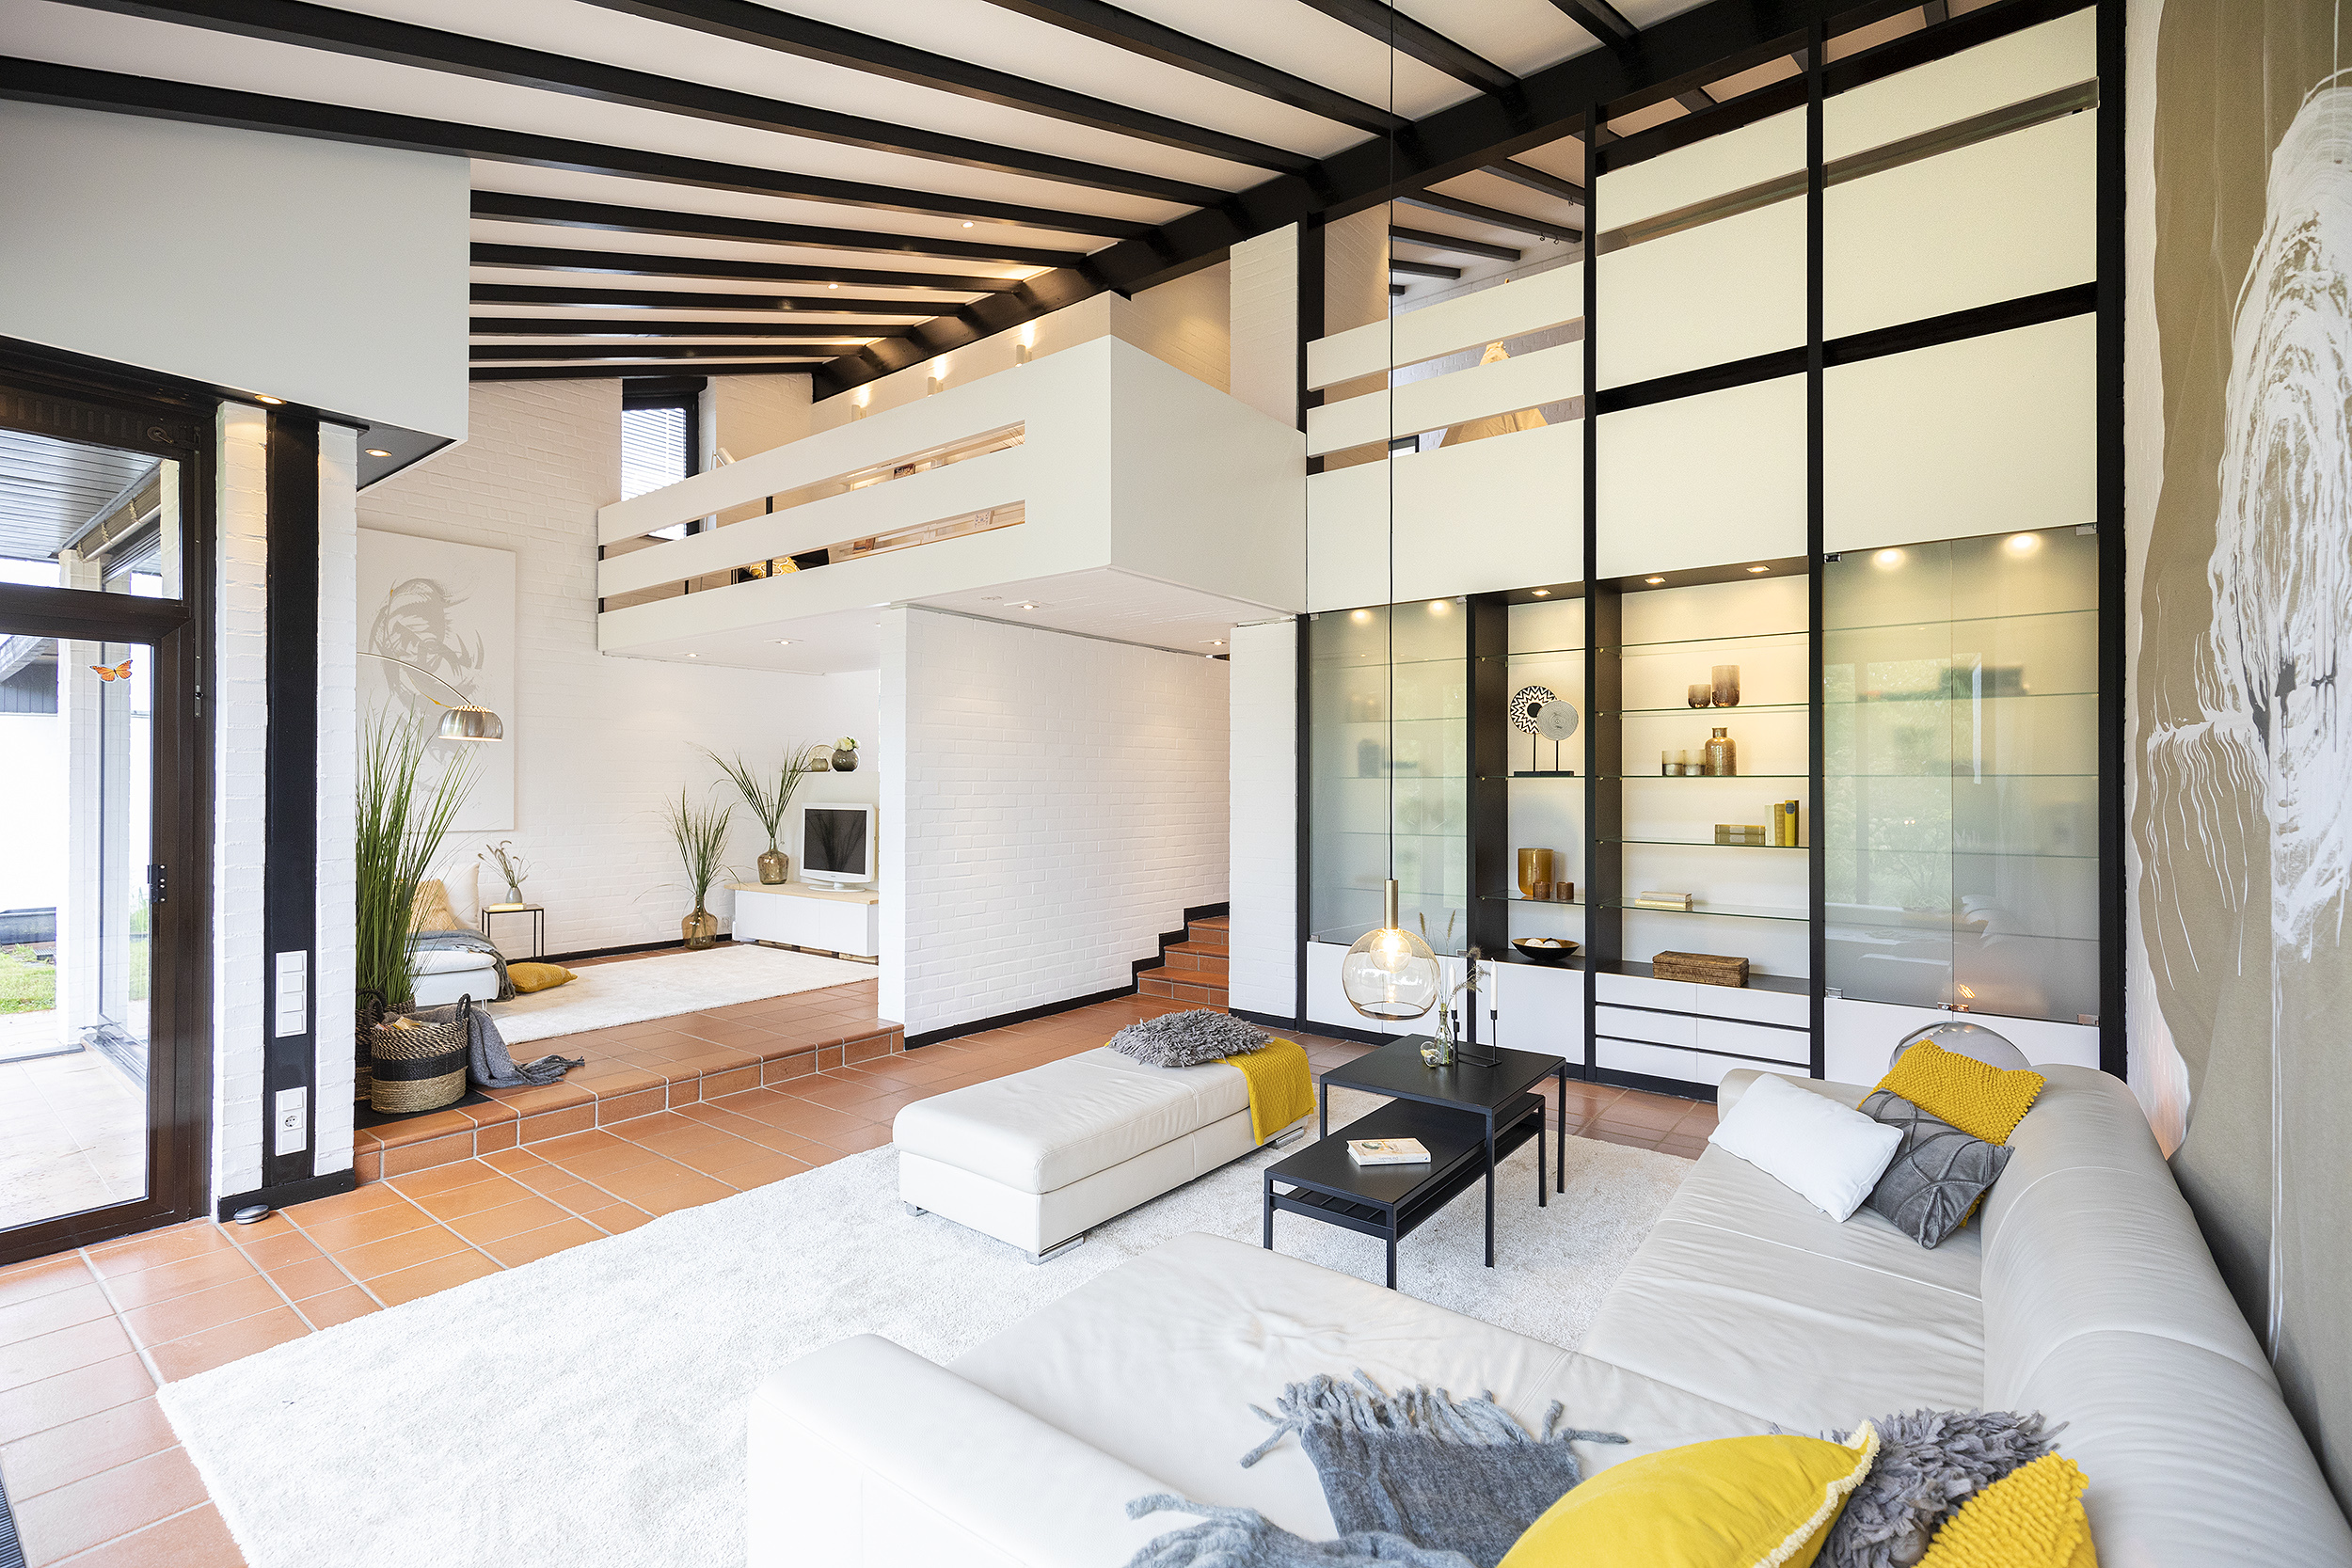 Verkauft! Modernes, freistehendes Architektenhaus in ruhiger Wohnlage von Neuss